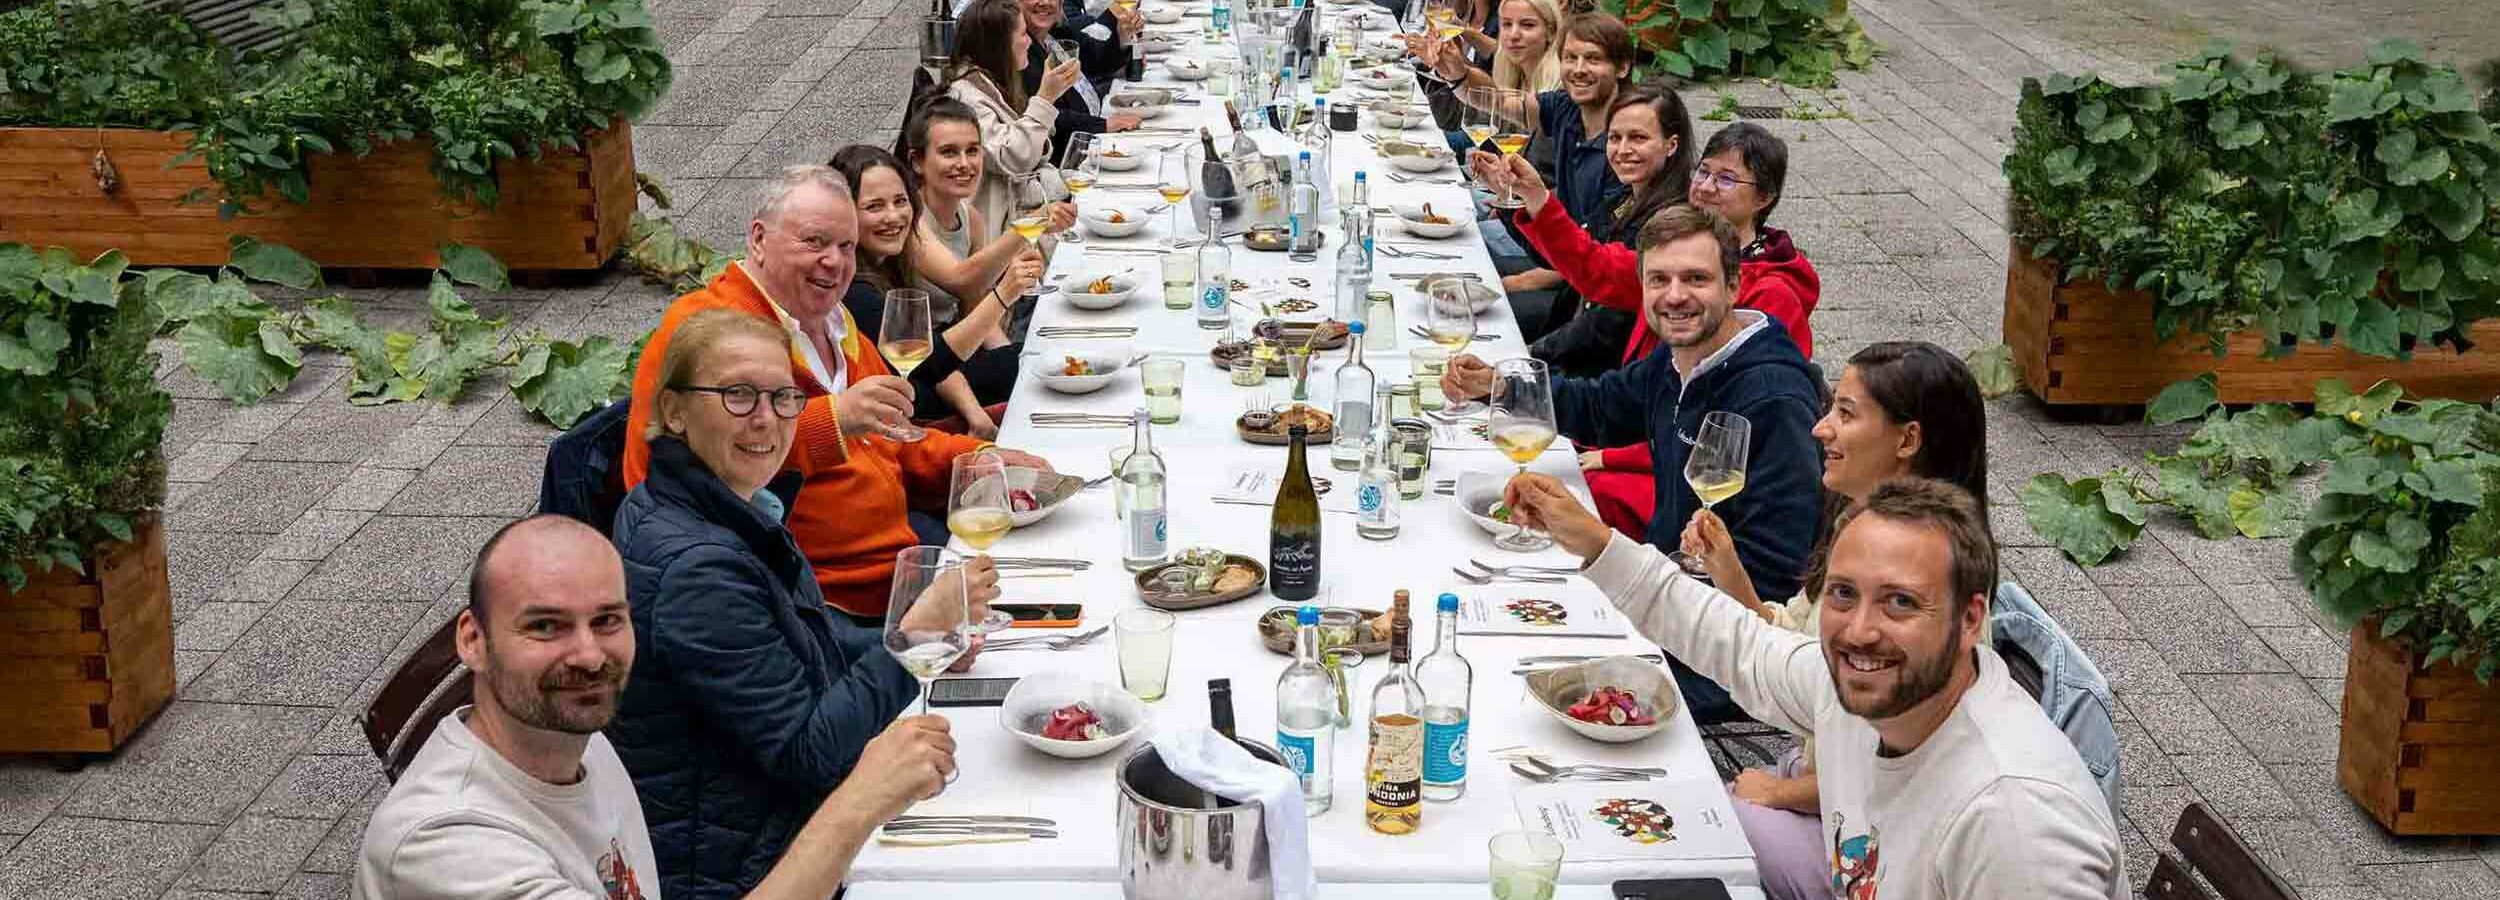 Lobenbergs Weinfamilie Weinhändler Mitarbeiter, versammelt an einem Tisch